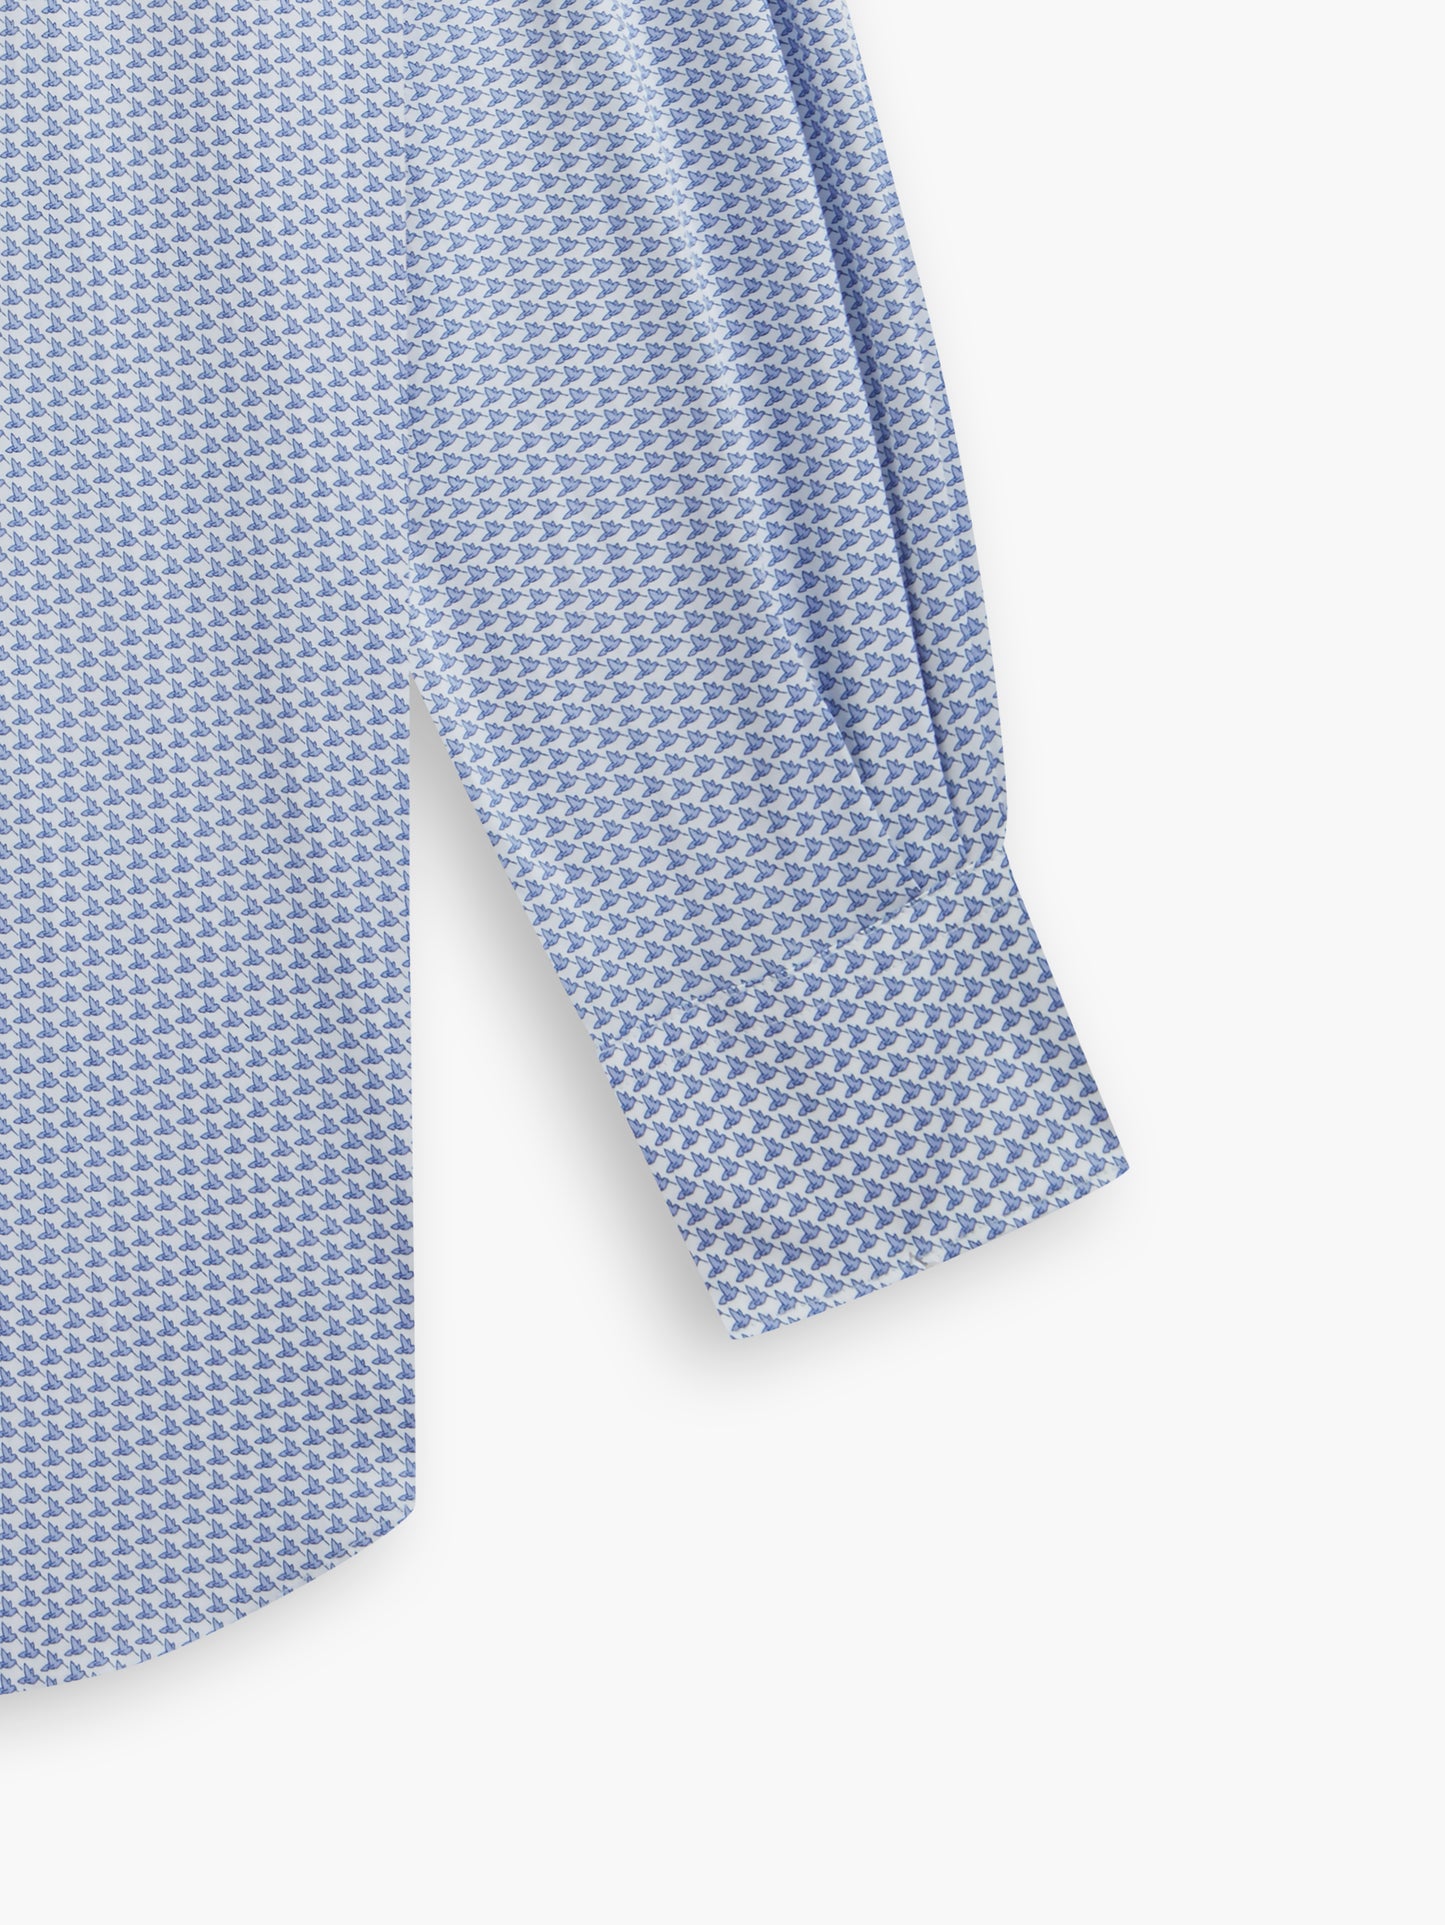 Max Cool Blue Hummingbird Animal Print Twill Slim Fit Single Cuff Classic Collar Shirt